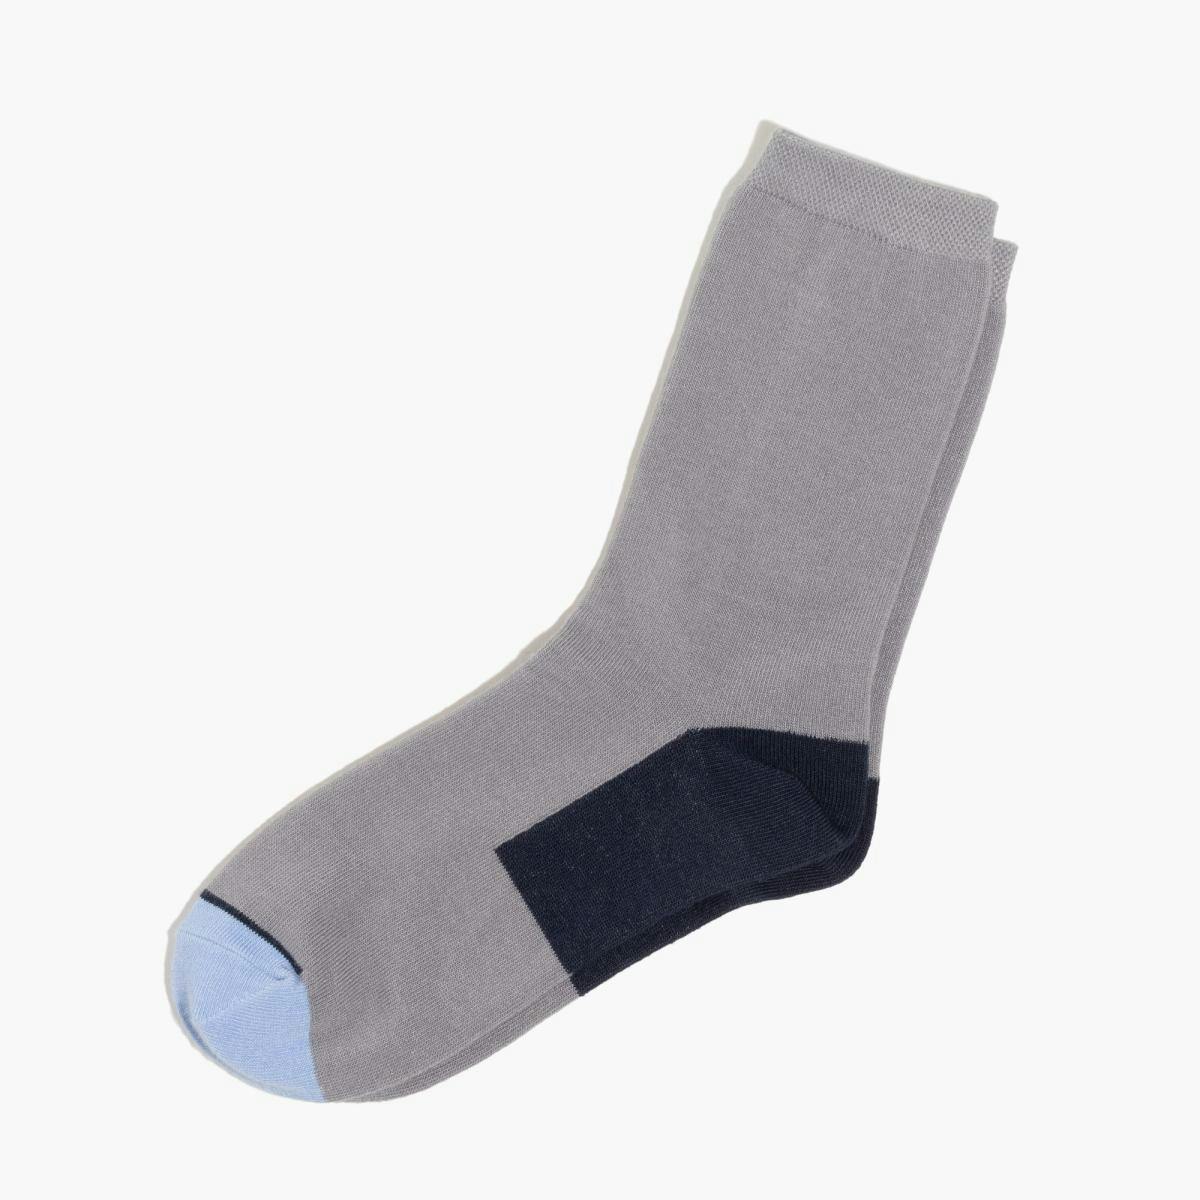 Coolmax® Socks - Product Image 1